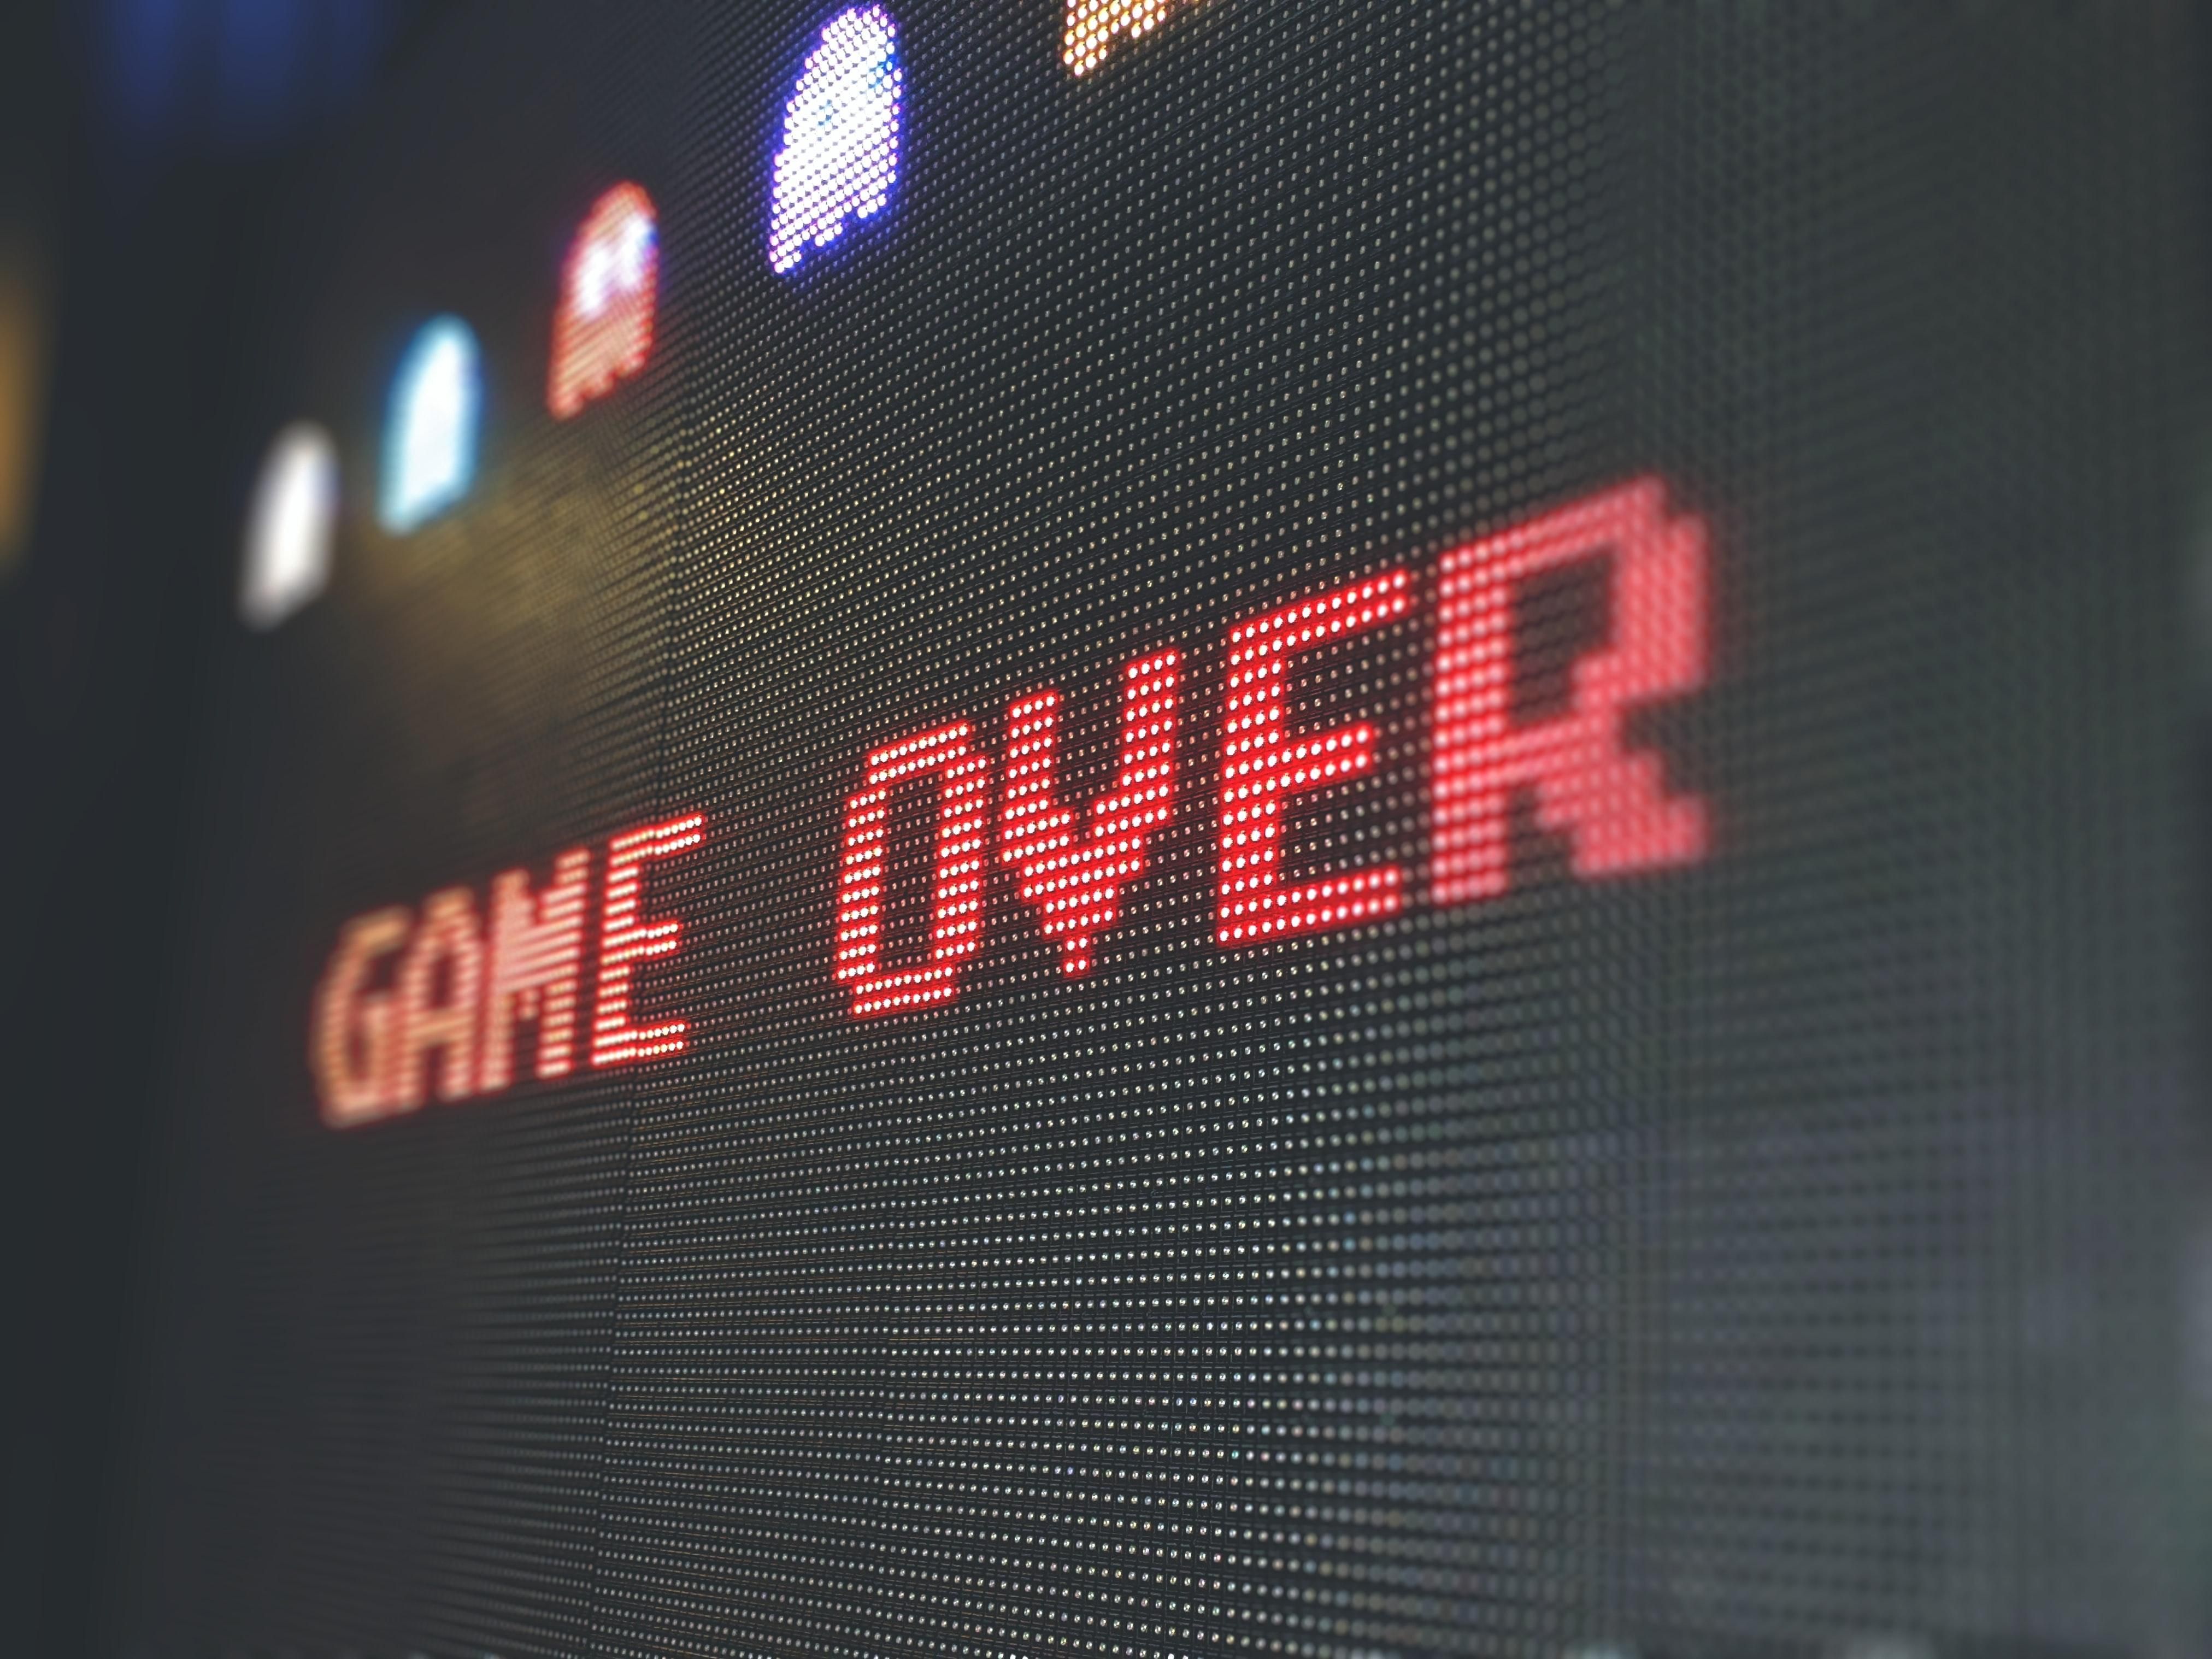 Game Over: какие компании из мира видеоигр уже поддержали Украину и наложили санкции на Россию - Games